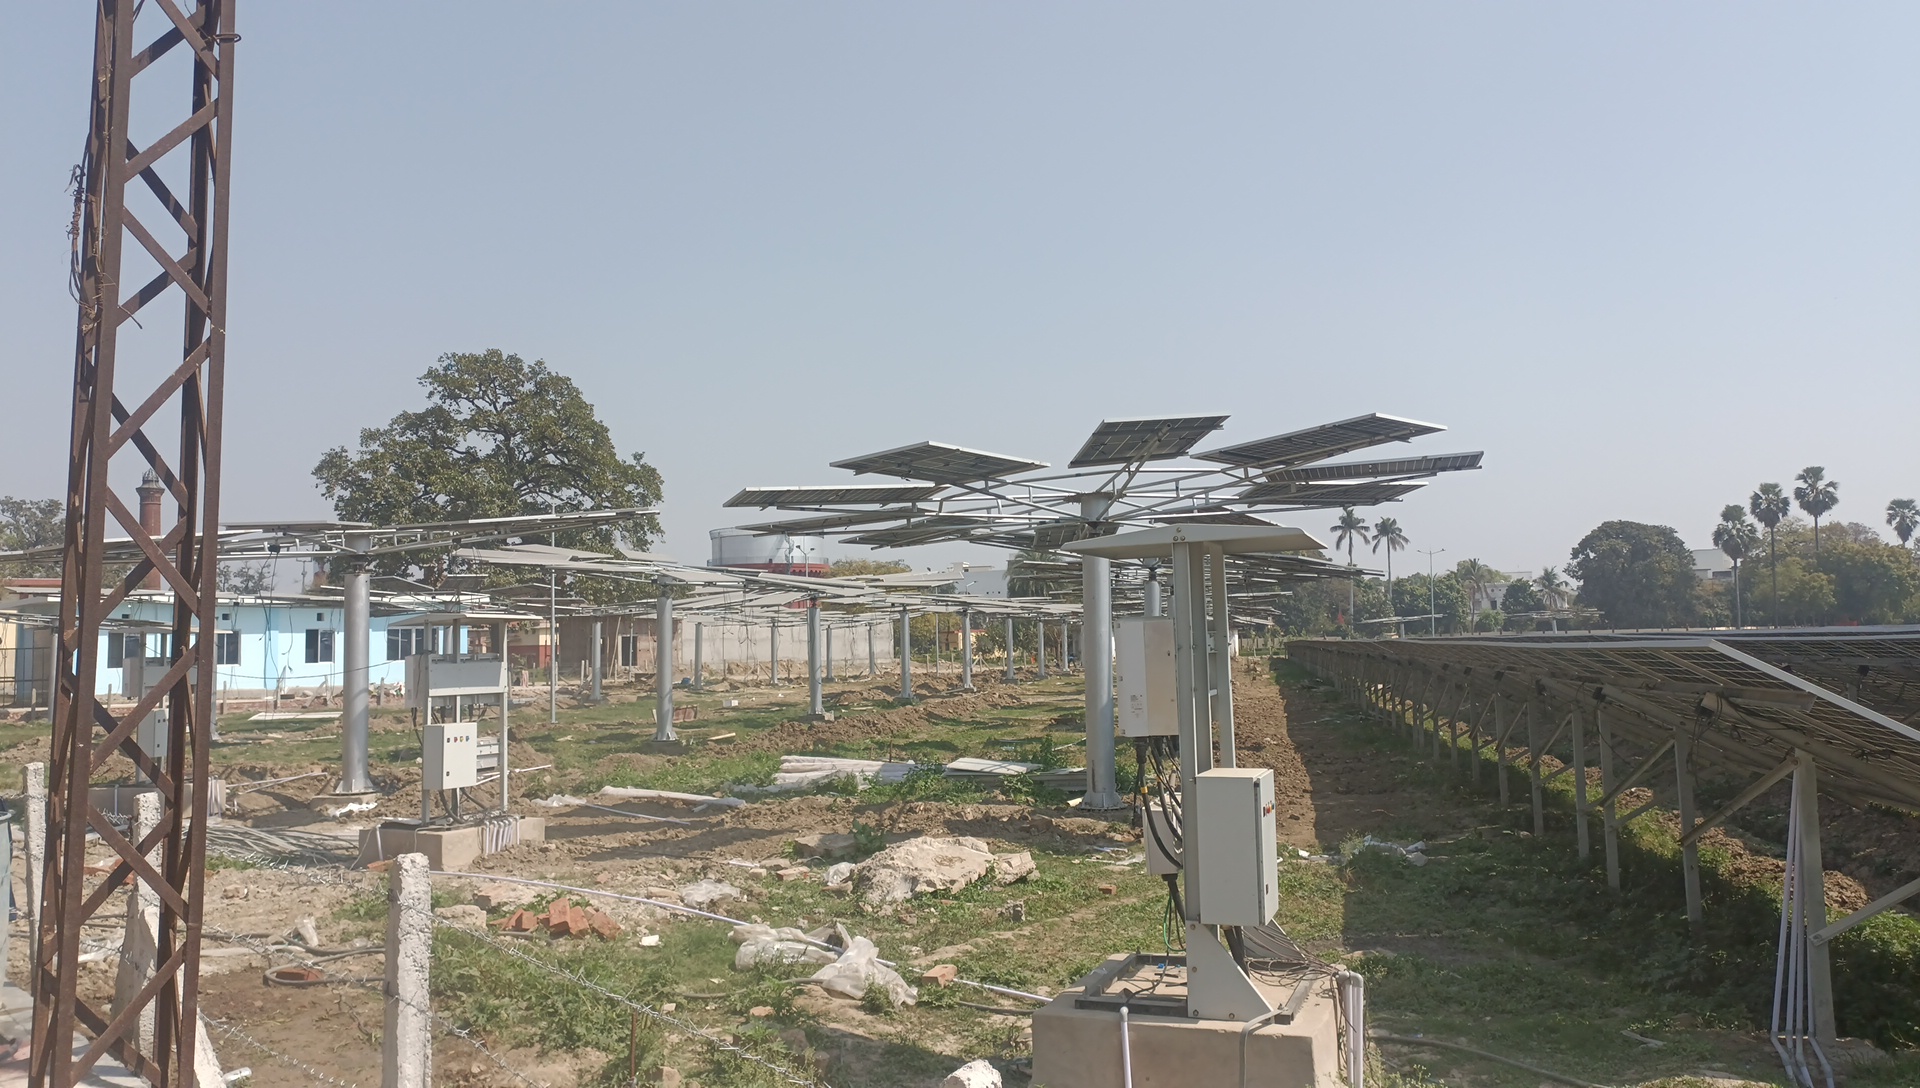 यूपी में घर-घर पानी पहुंचाने वाला जलकल विभाग अब बिजली भी पैदा करेगा